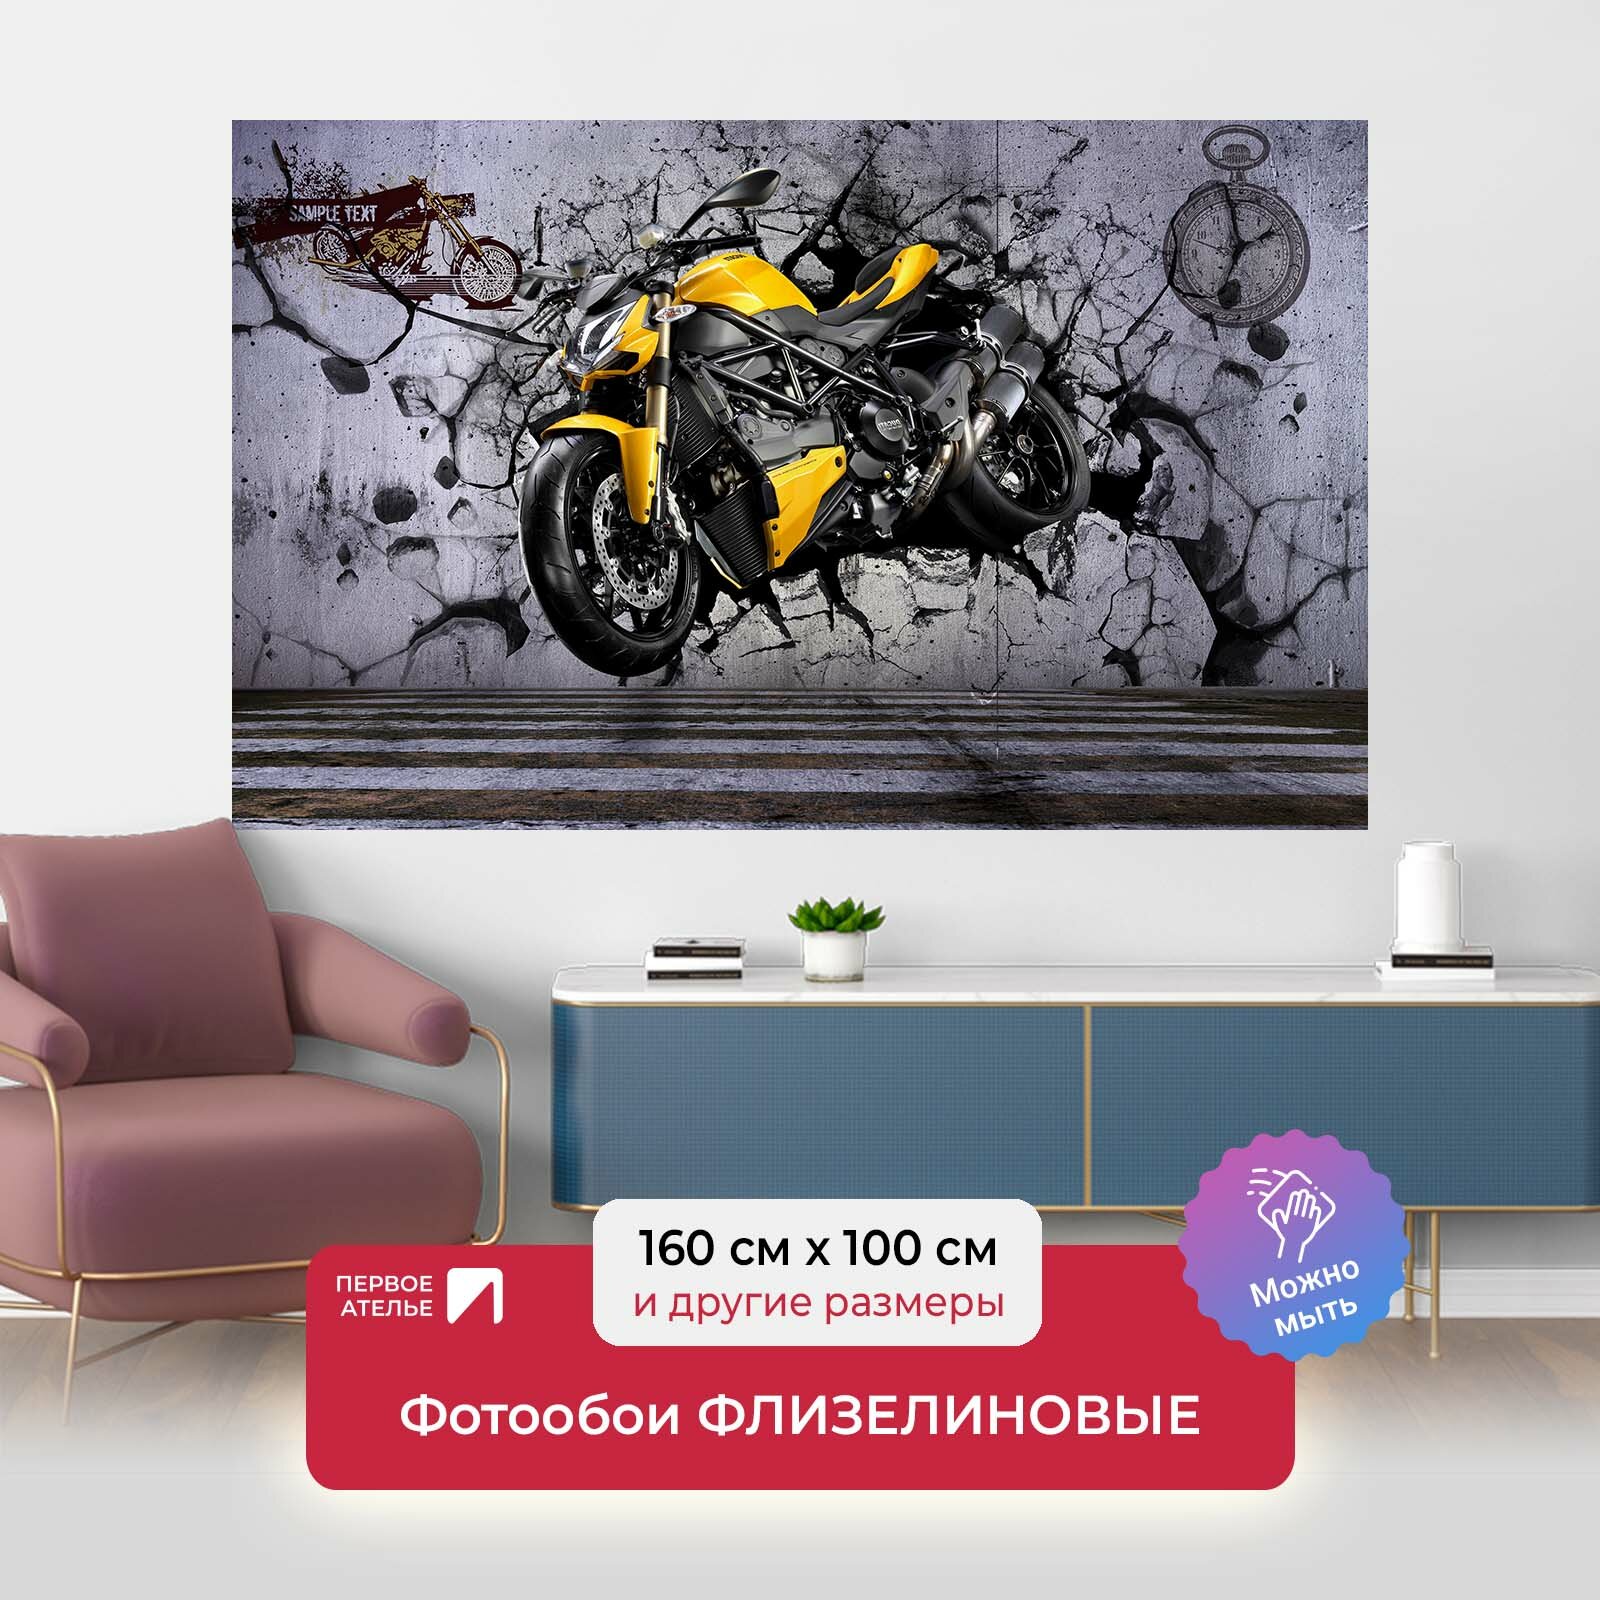 Фотообои на стену первое ателье "Желтый мотоцикл пробивает стену" 160х100 см (ШхВ), флизелиновые Premium